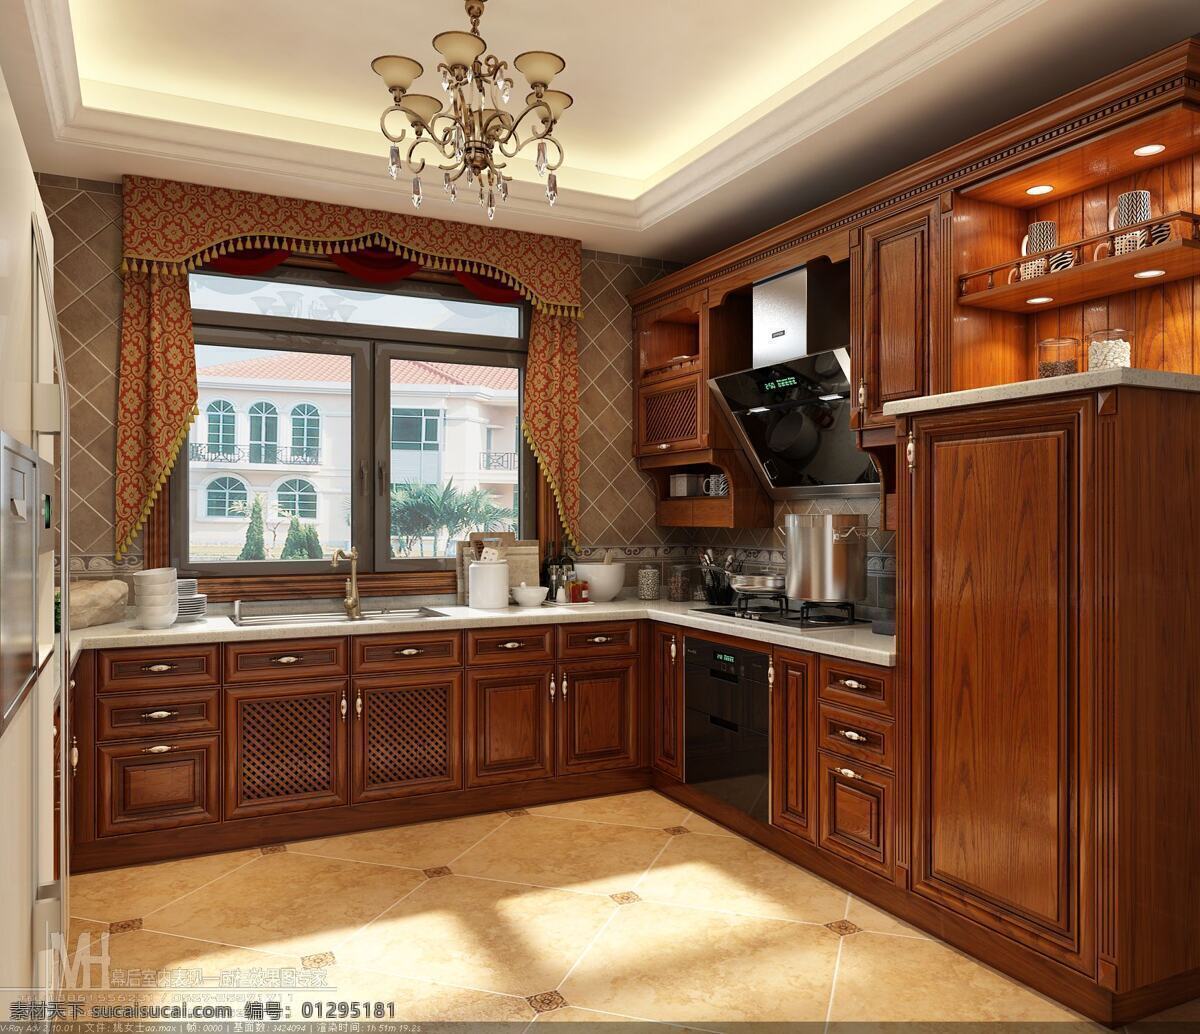 橱柜效果图 厨房效果图 橱柜设计 厨房设计 效果图 环境设计 室内设计